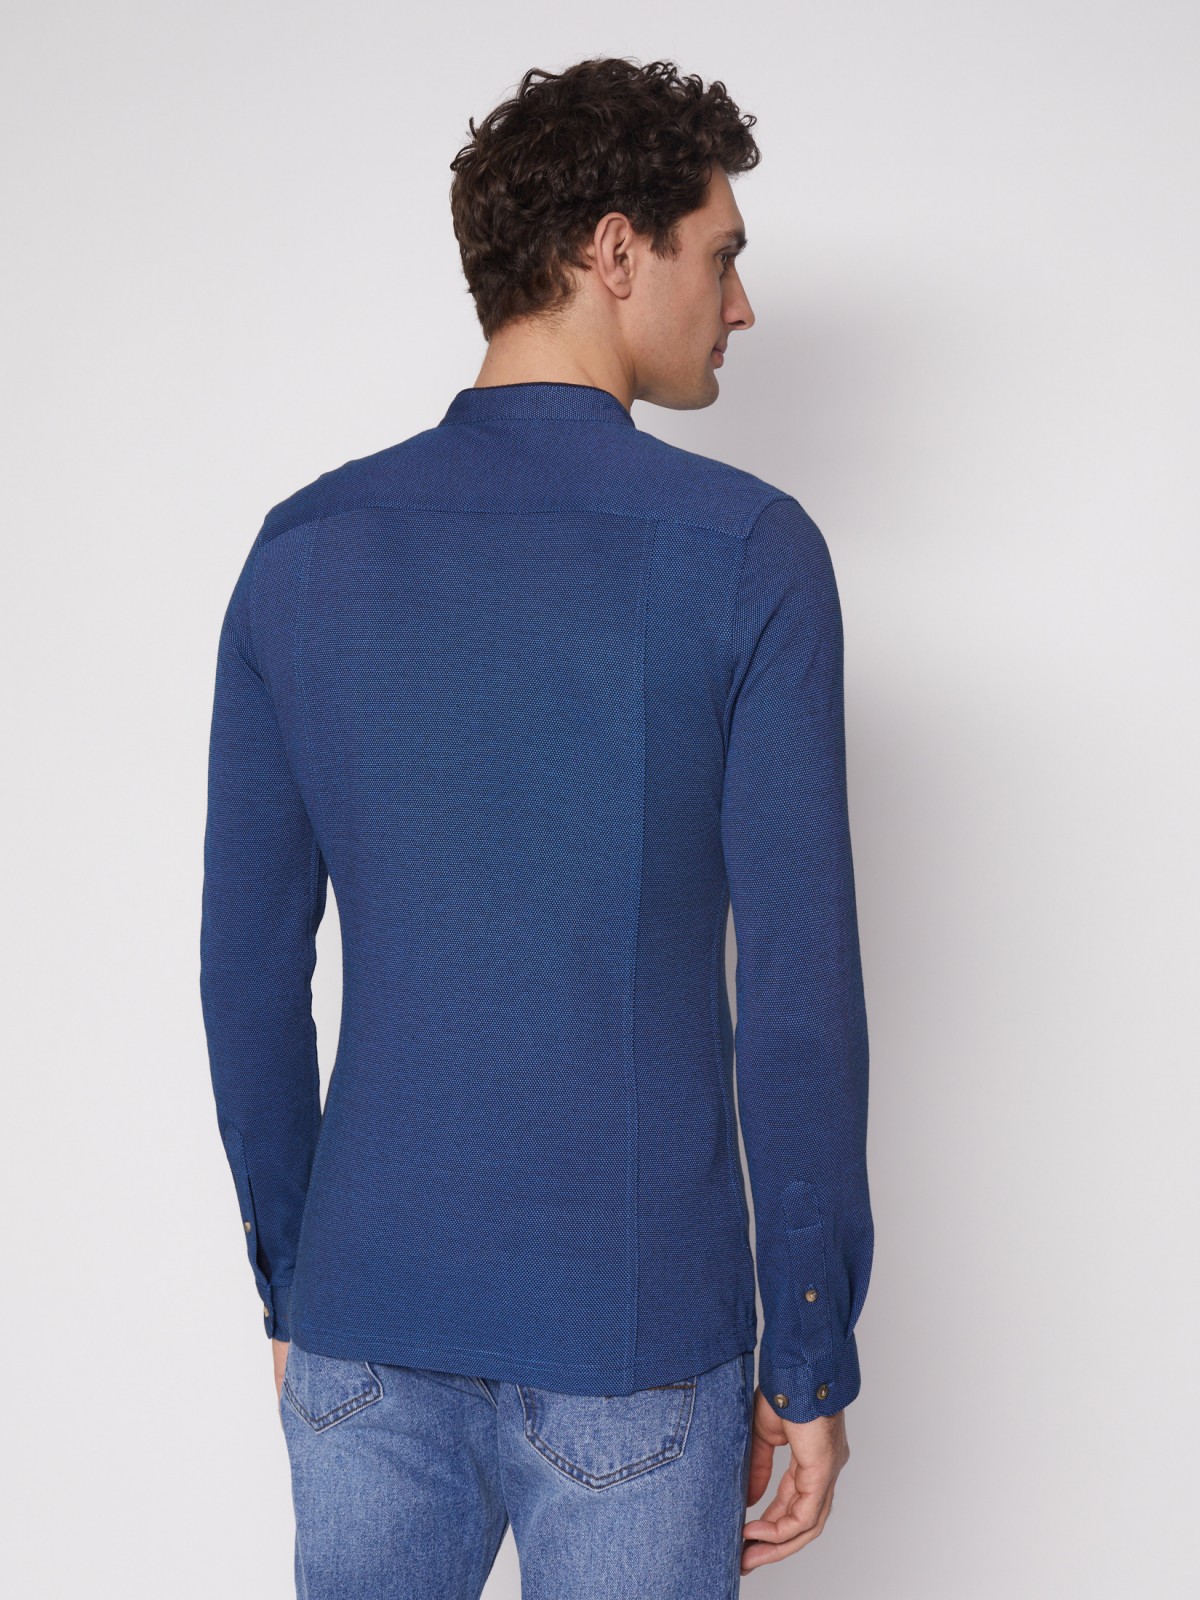 Рубашка с воротником-стойкой zolla 012132159023, цвет темно-синий, размер S - фото 5